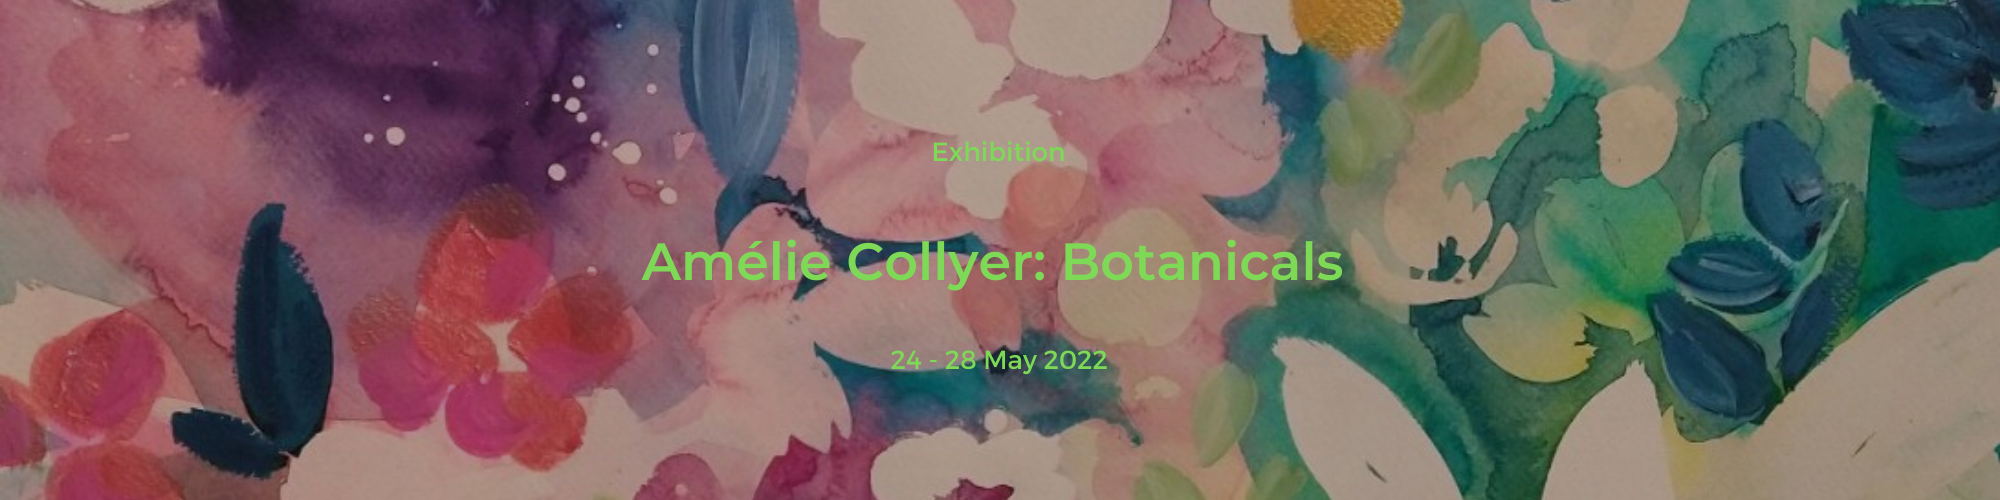 Amélie Collyer: Botanicals